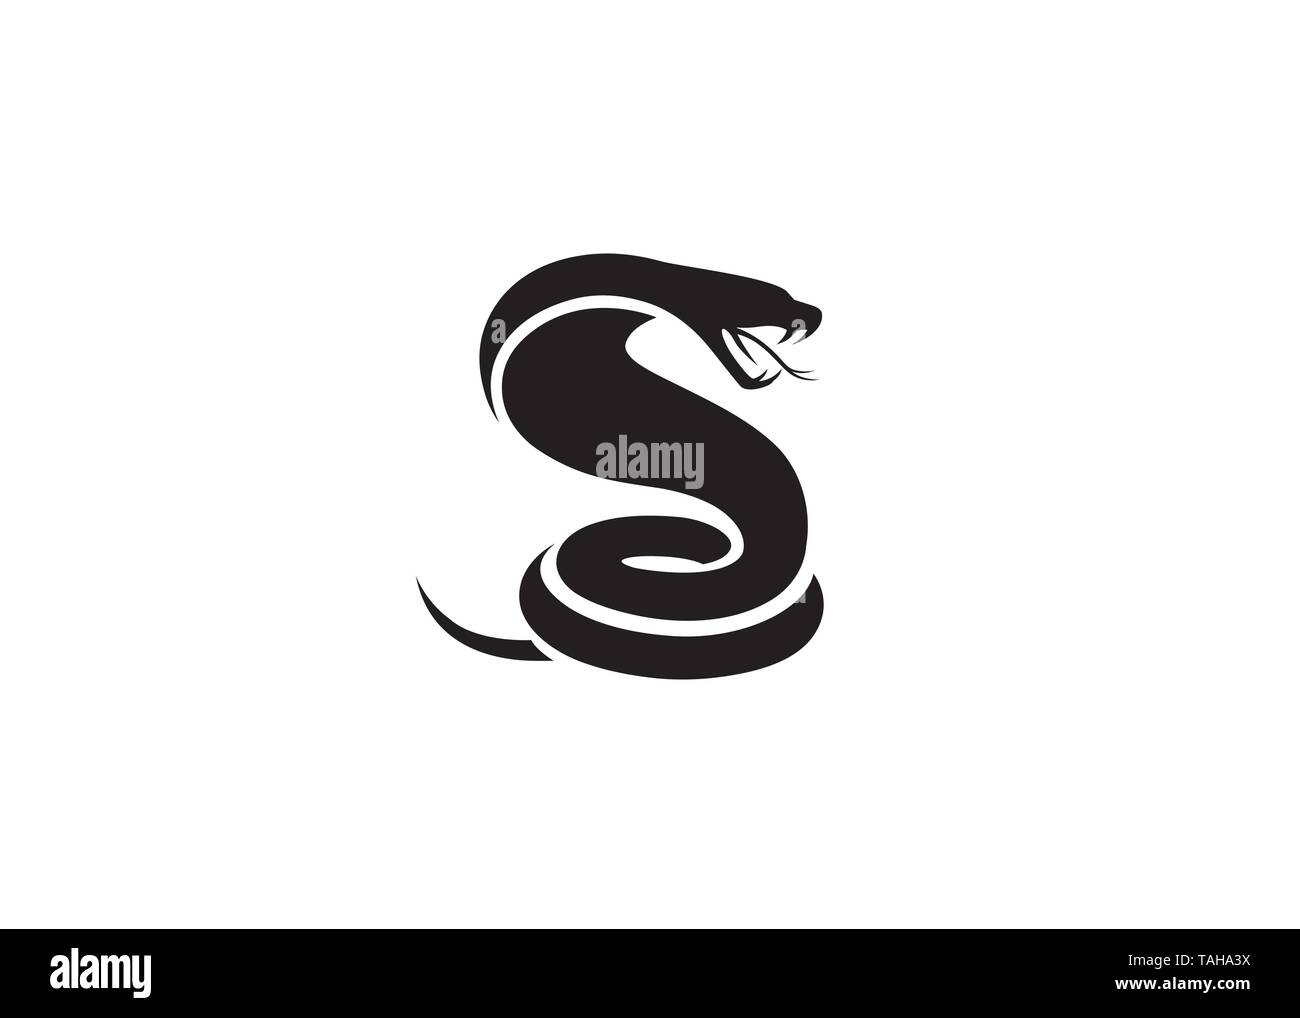 Creative Black Snake Logo Stock Vector